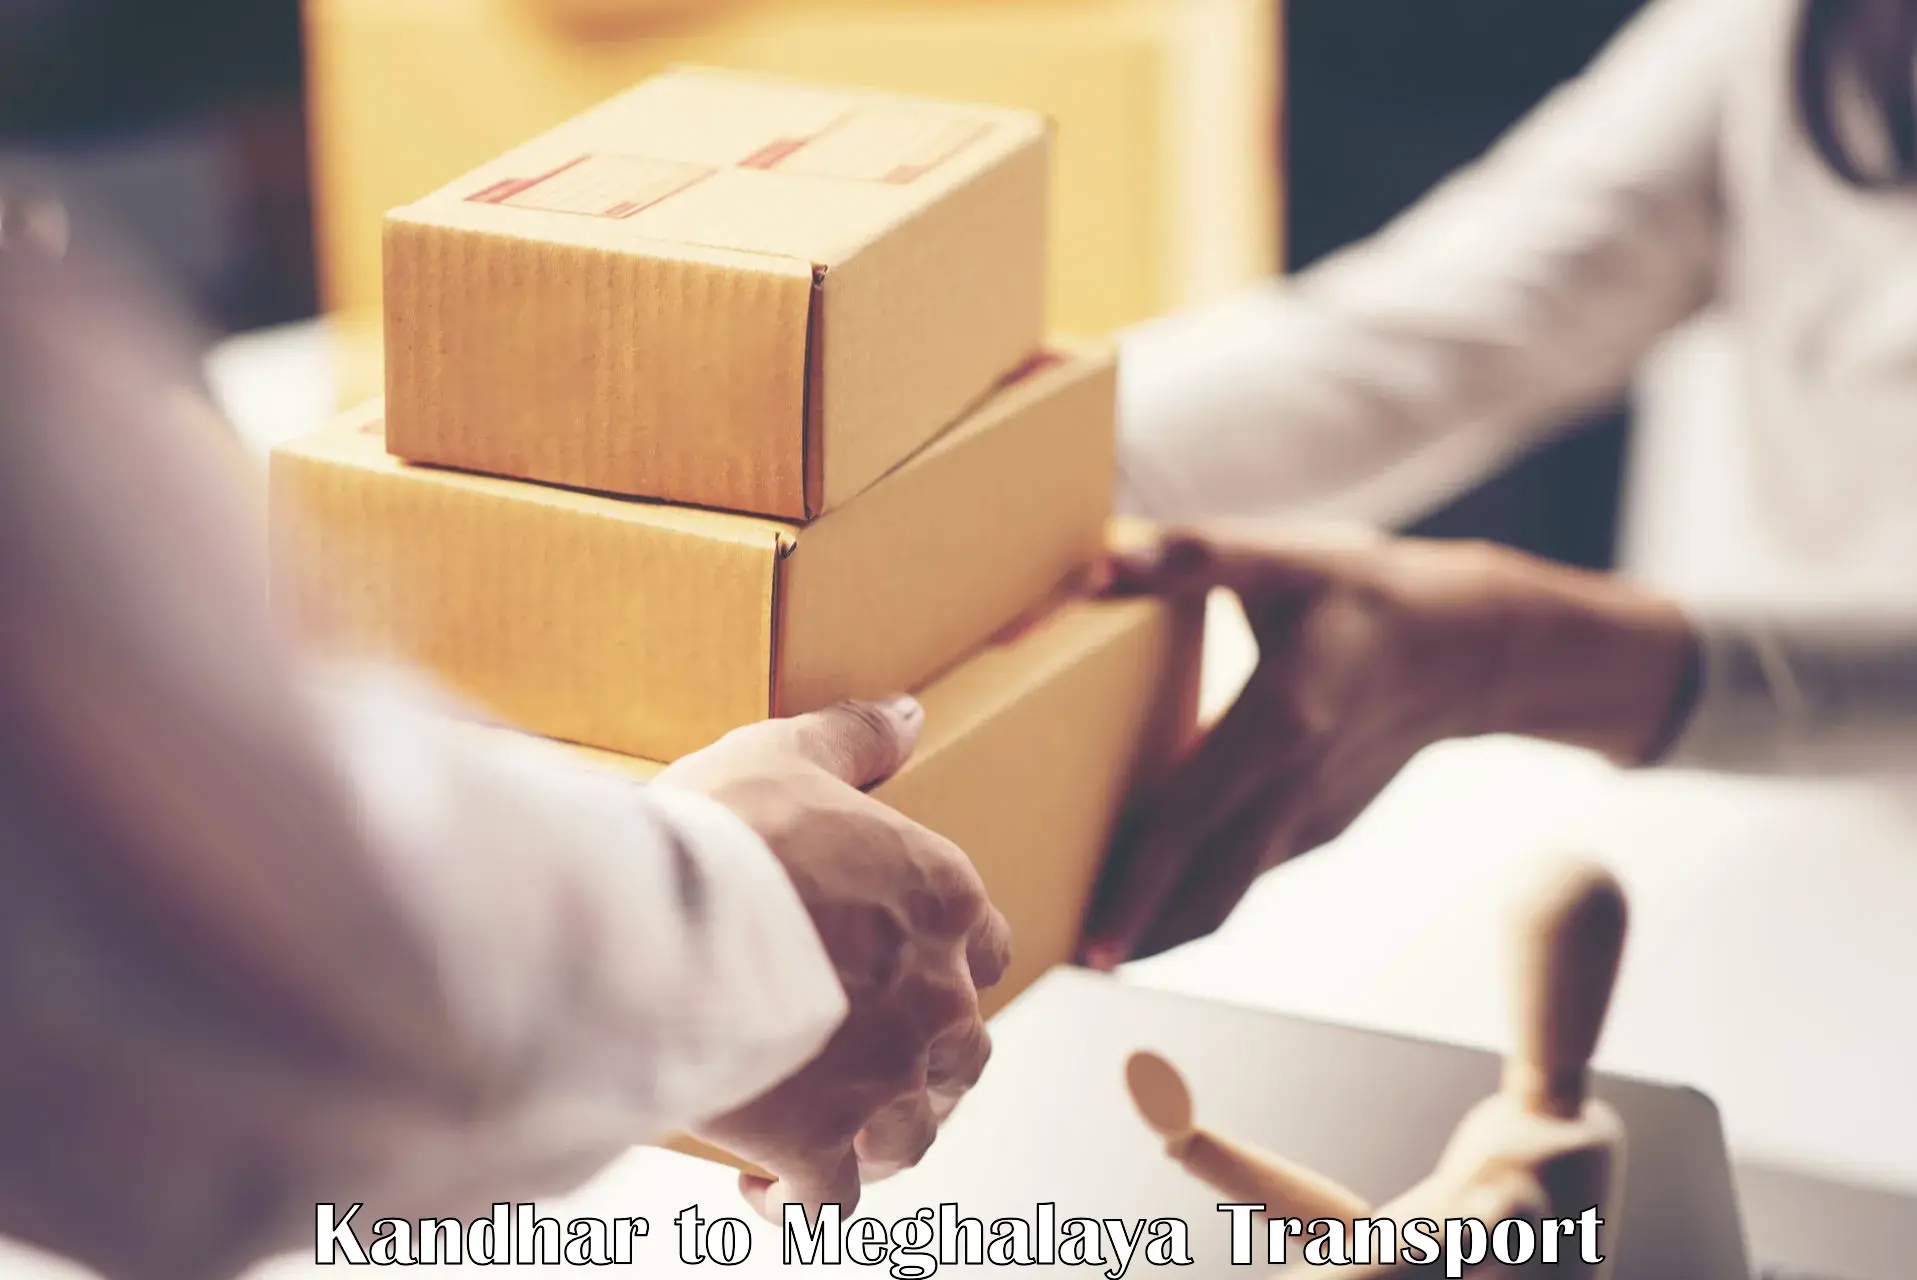 Shipping partner Kandhar to Cherrapunji